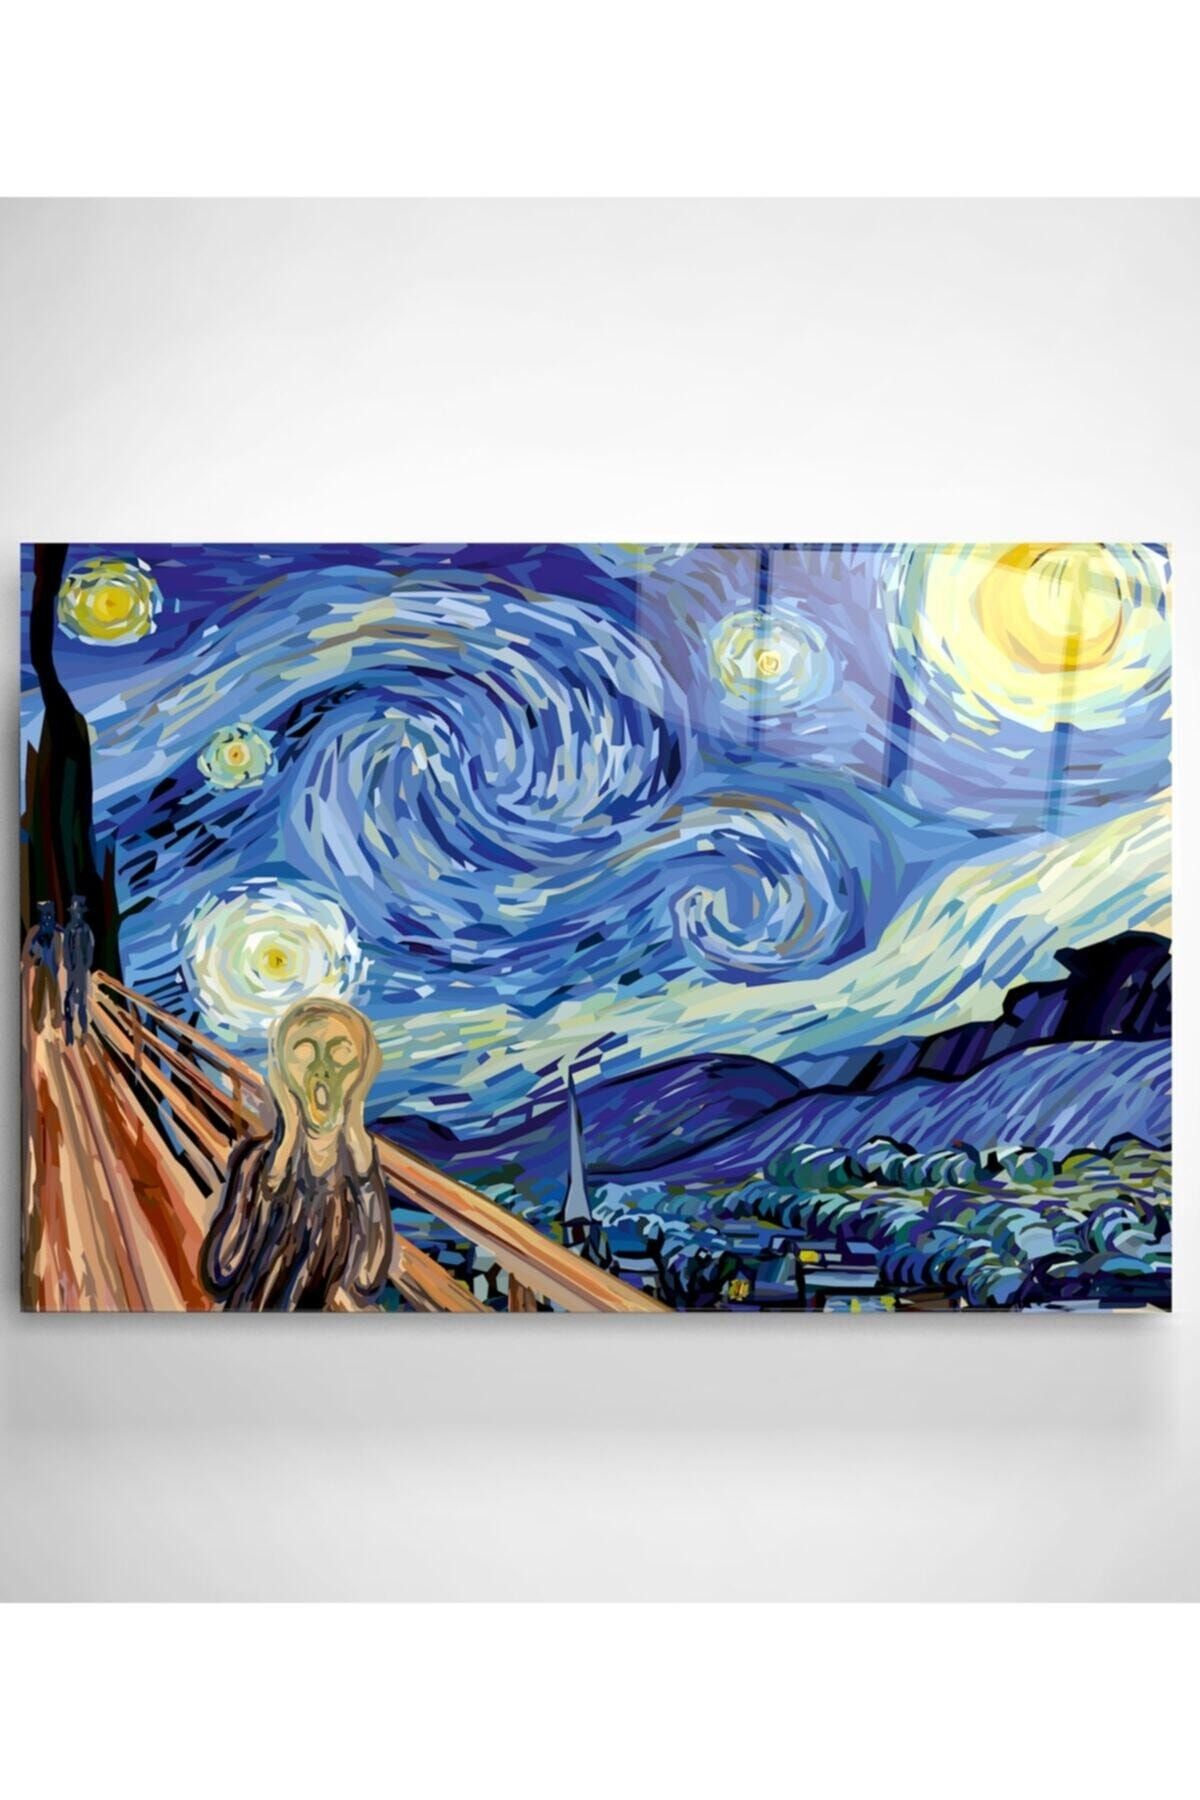 Genel Markalar Digi-art Yıldızlı Gece Vincent Van Gogh Cam Tablo 70x110